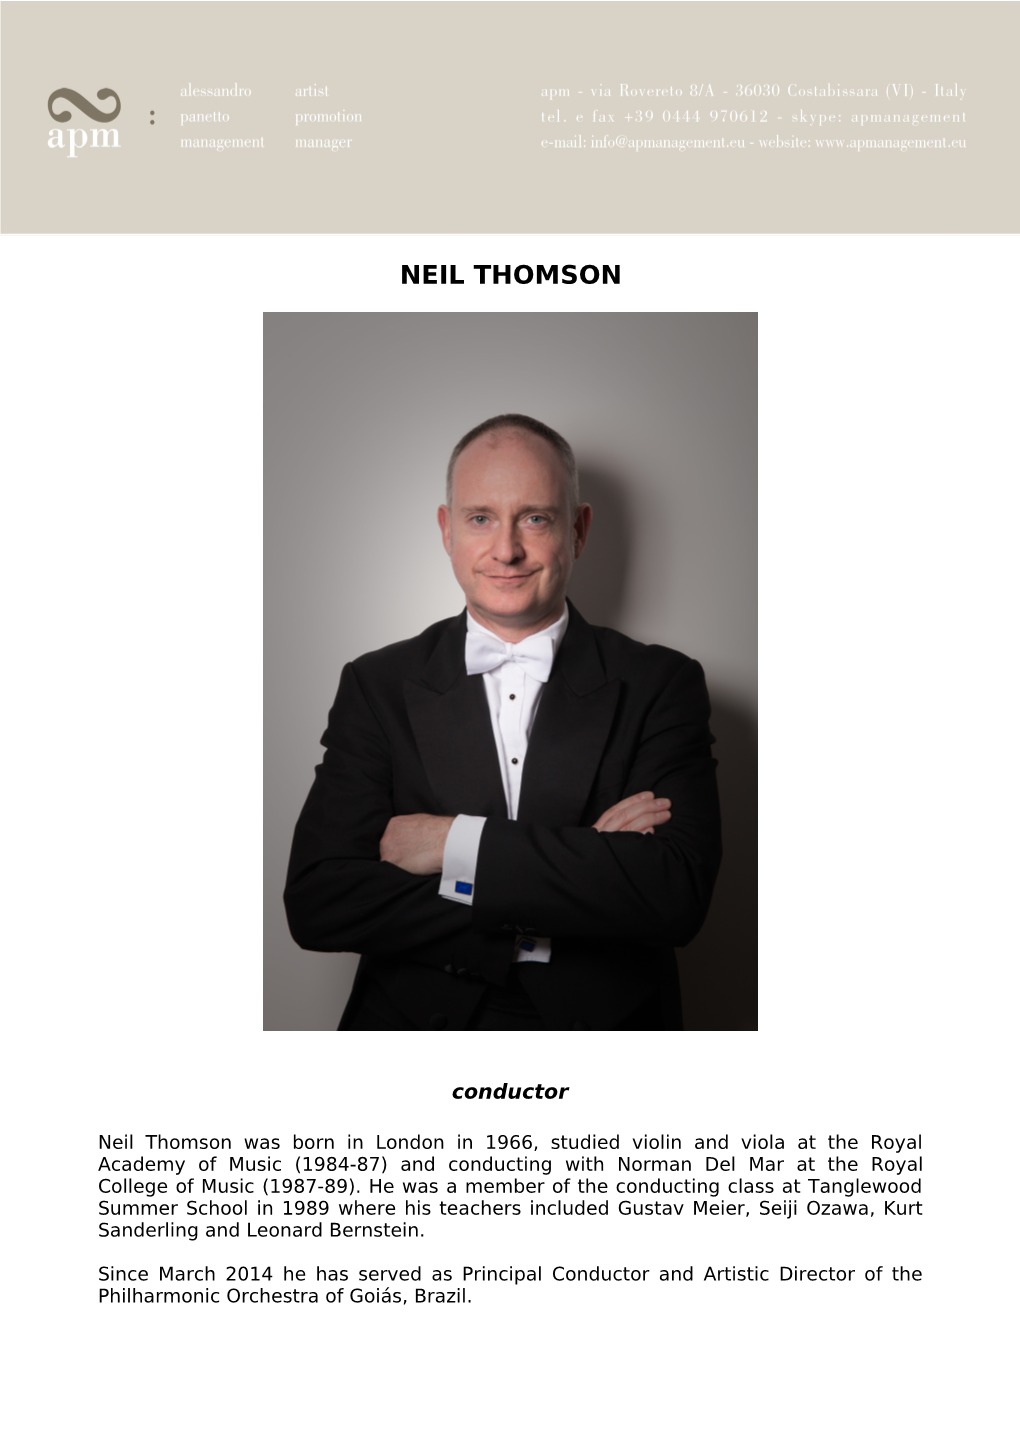 Neil Thomson